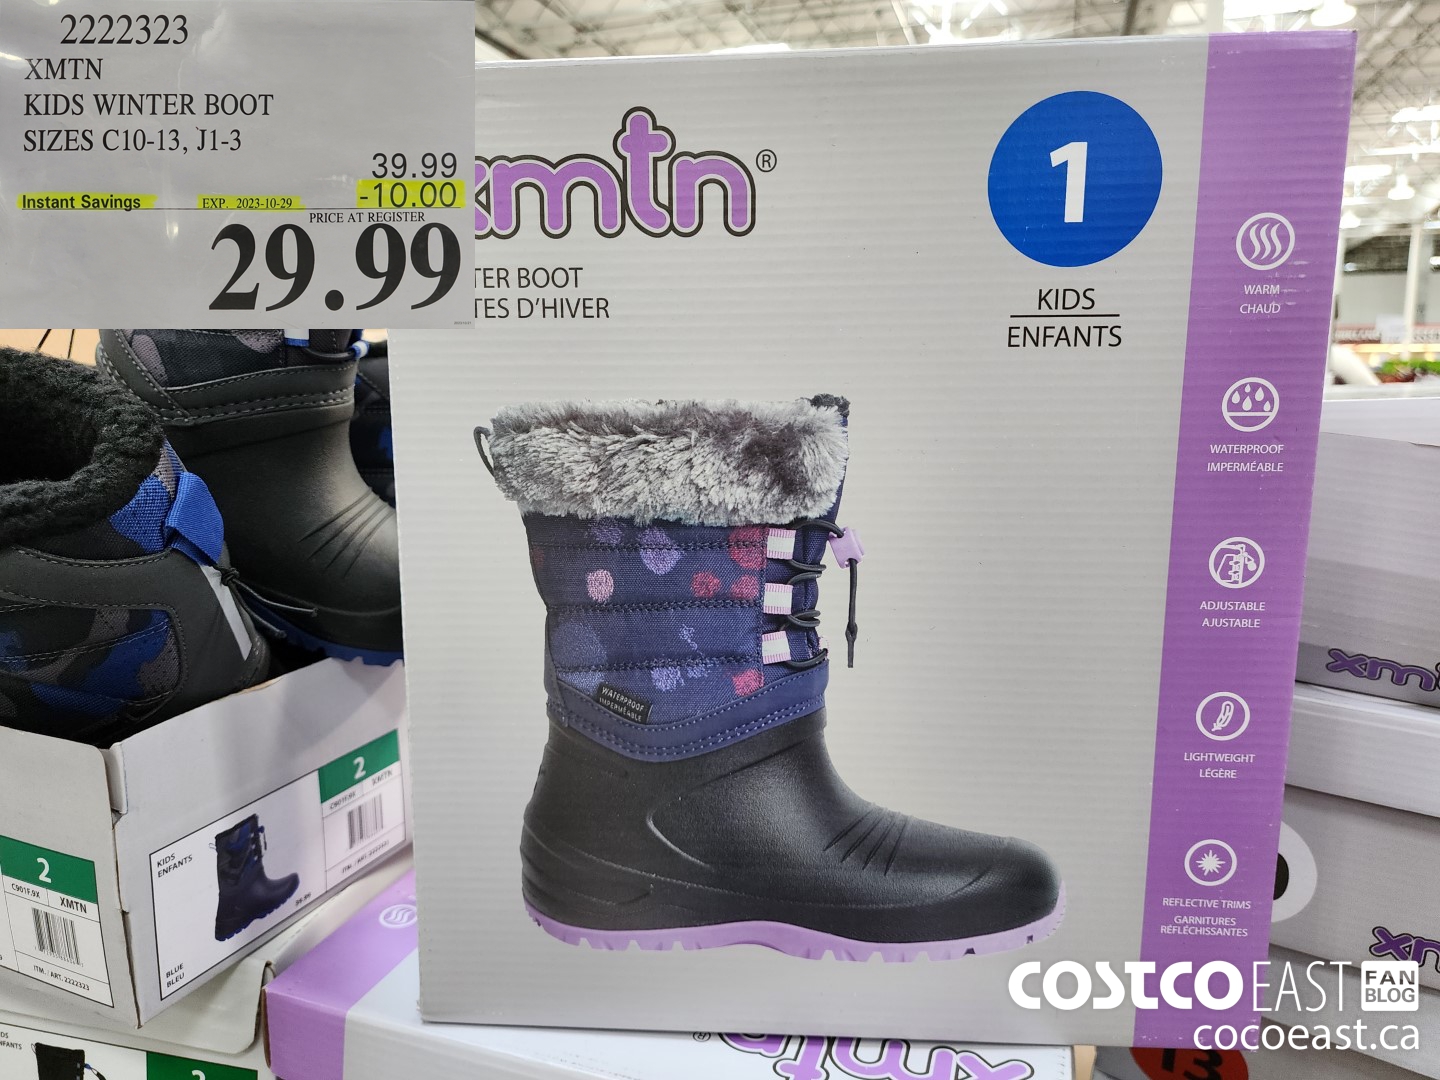 Costco 2022 Winter Seasonal Aisle: Spring Clothing, Footwear